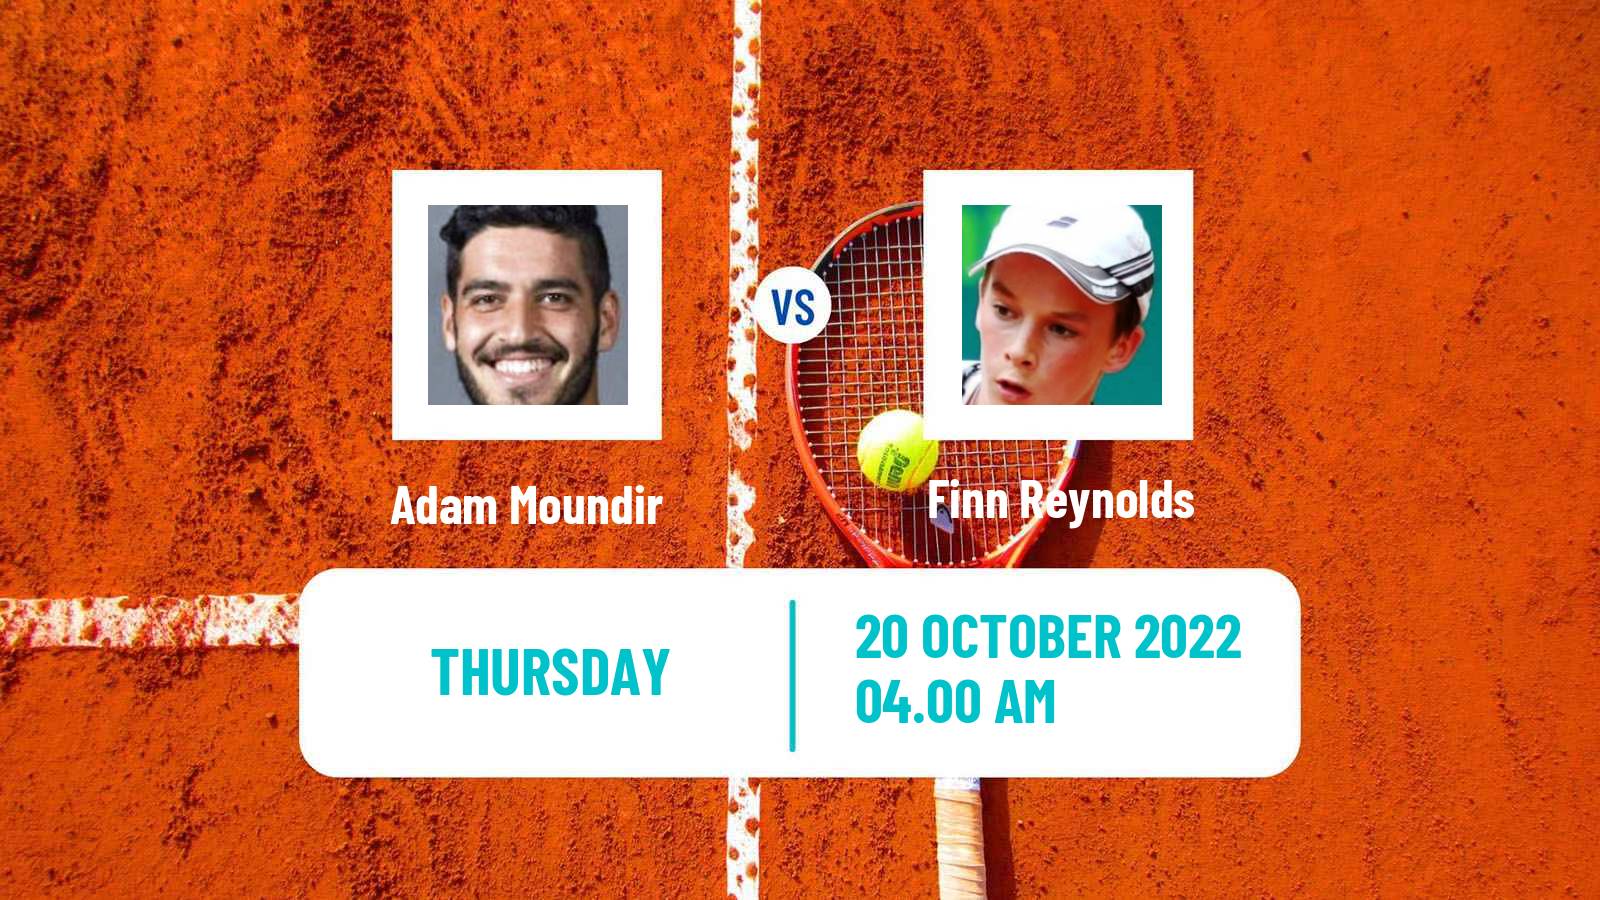 Tennis ITF Tournaments Adam Moundir - Finn Reynolds